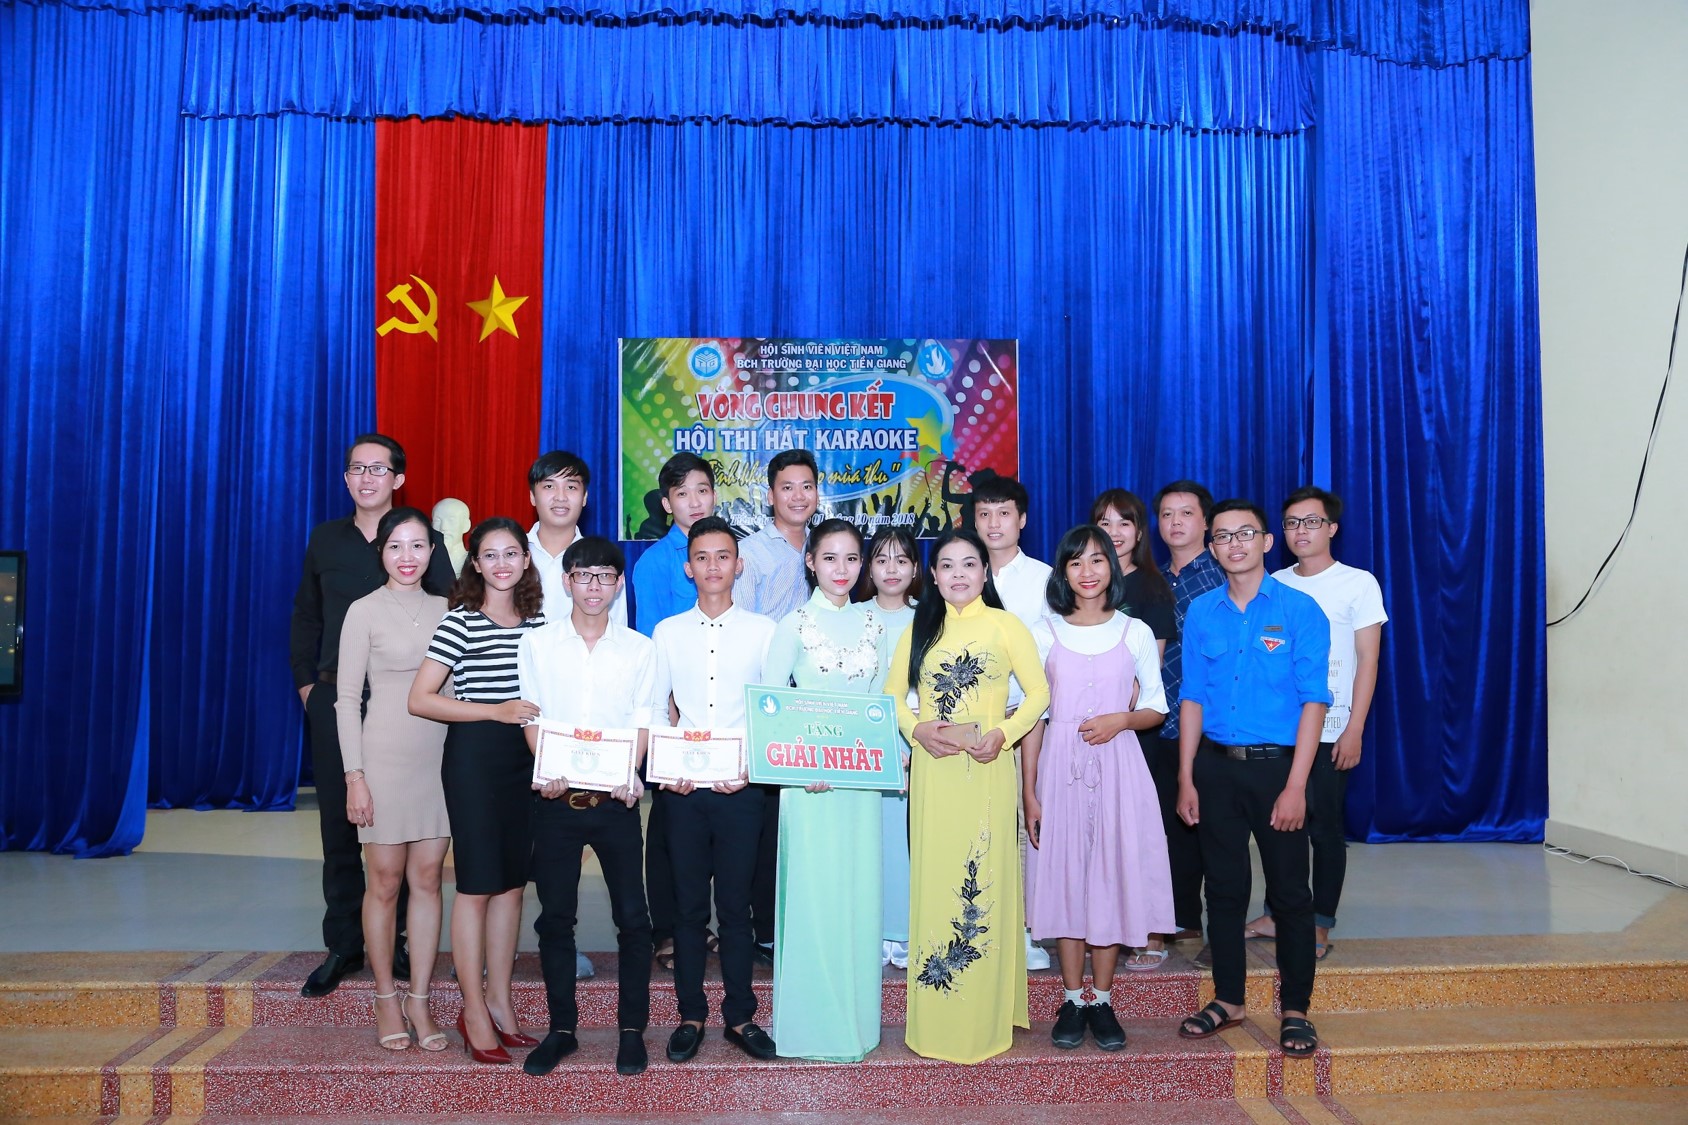 Sinh viên Phạm Thị Yến Nhi đạt giải Nhất  Hội thi hát karaoke “Tình khúc bolero mùa thu”